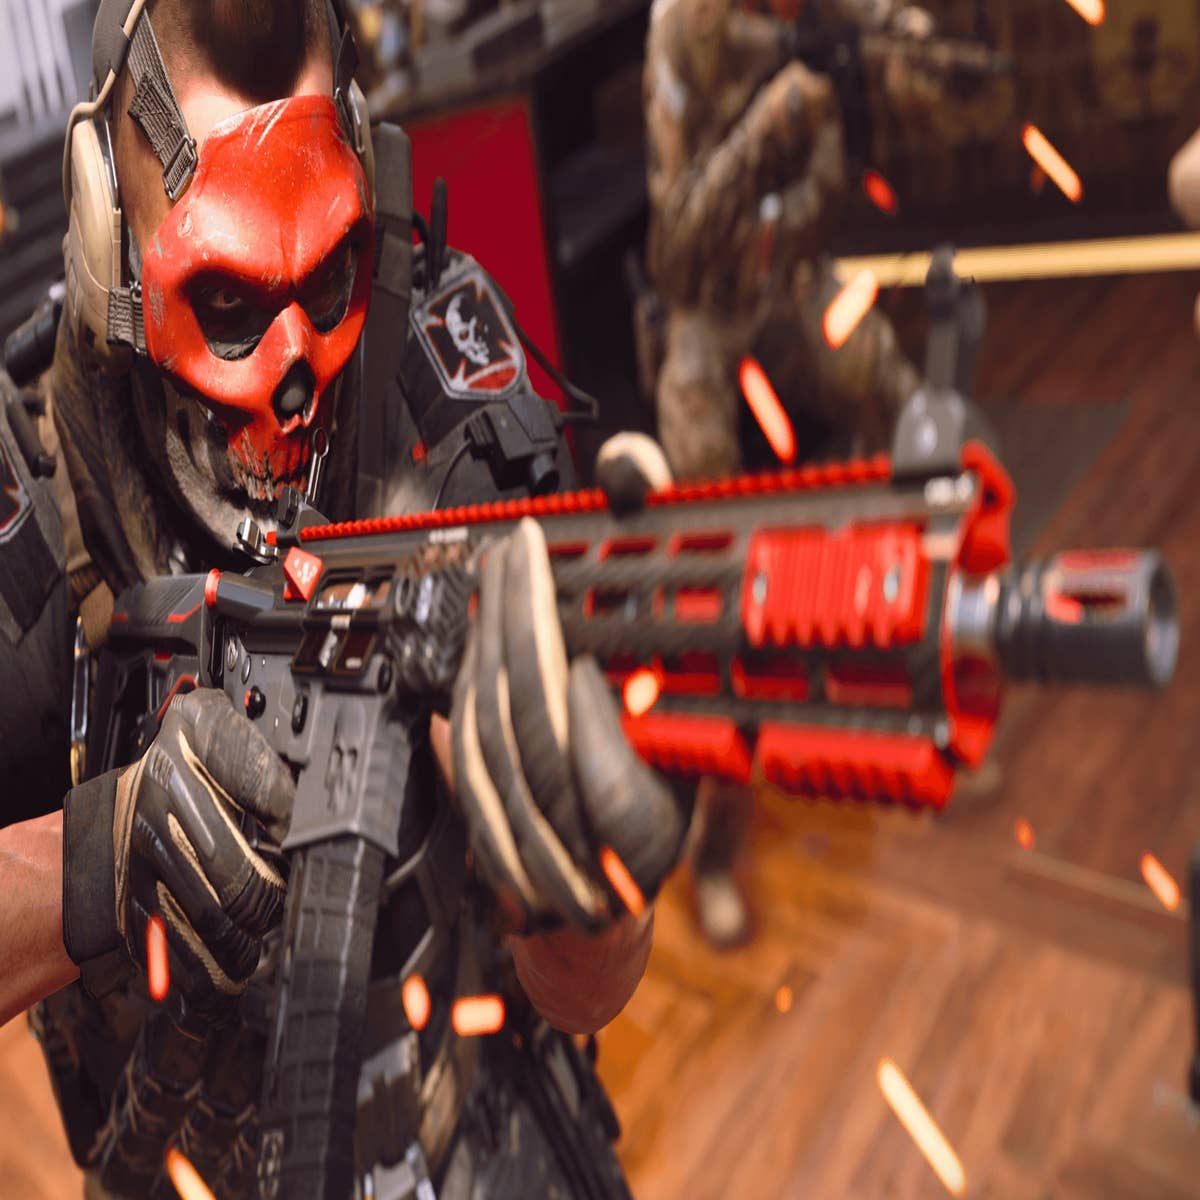 Call of Duty: Warzone 2.0: as 10 melhores armas da Temporada 4